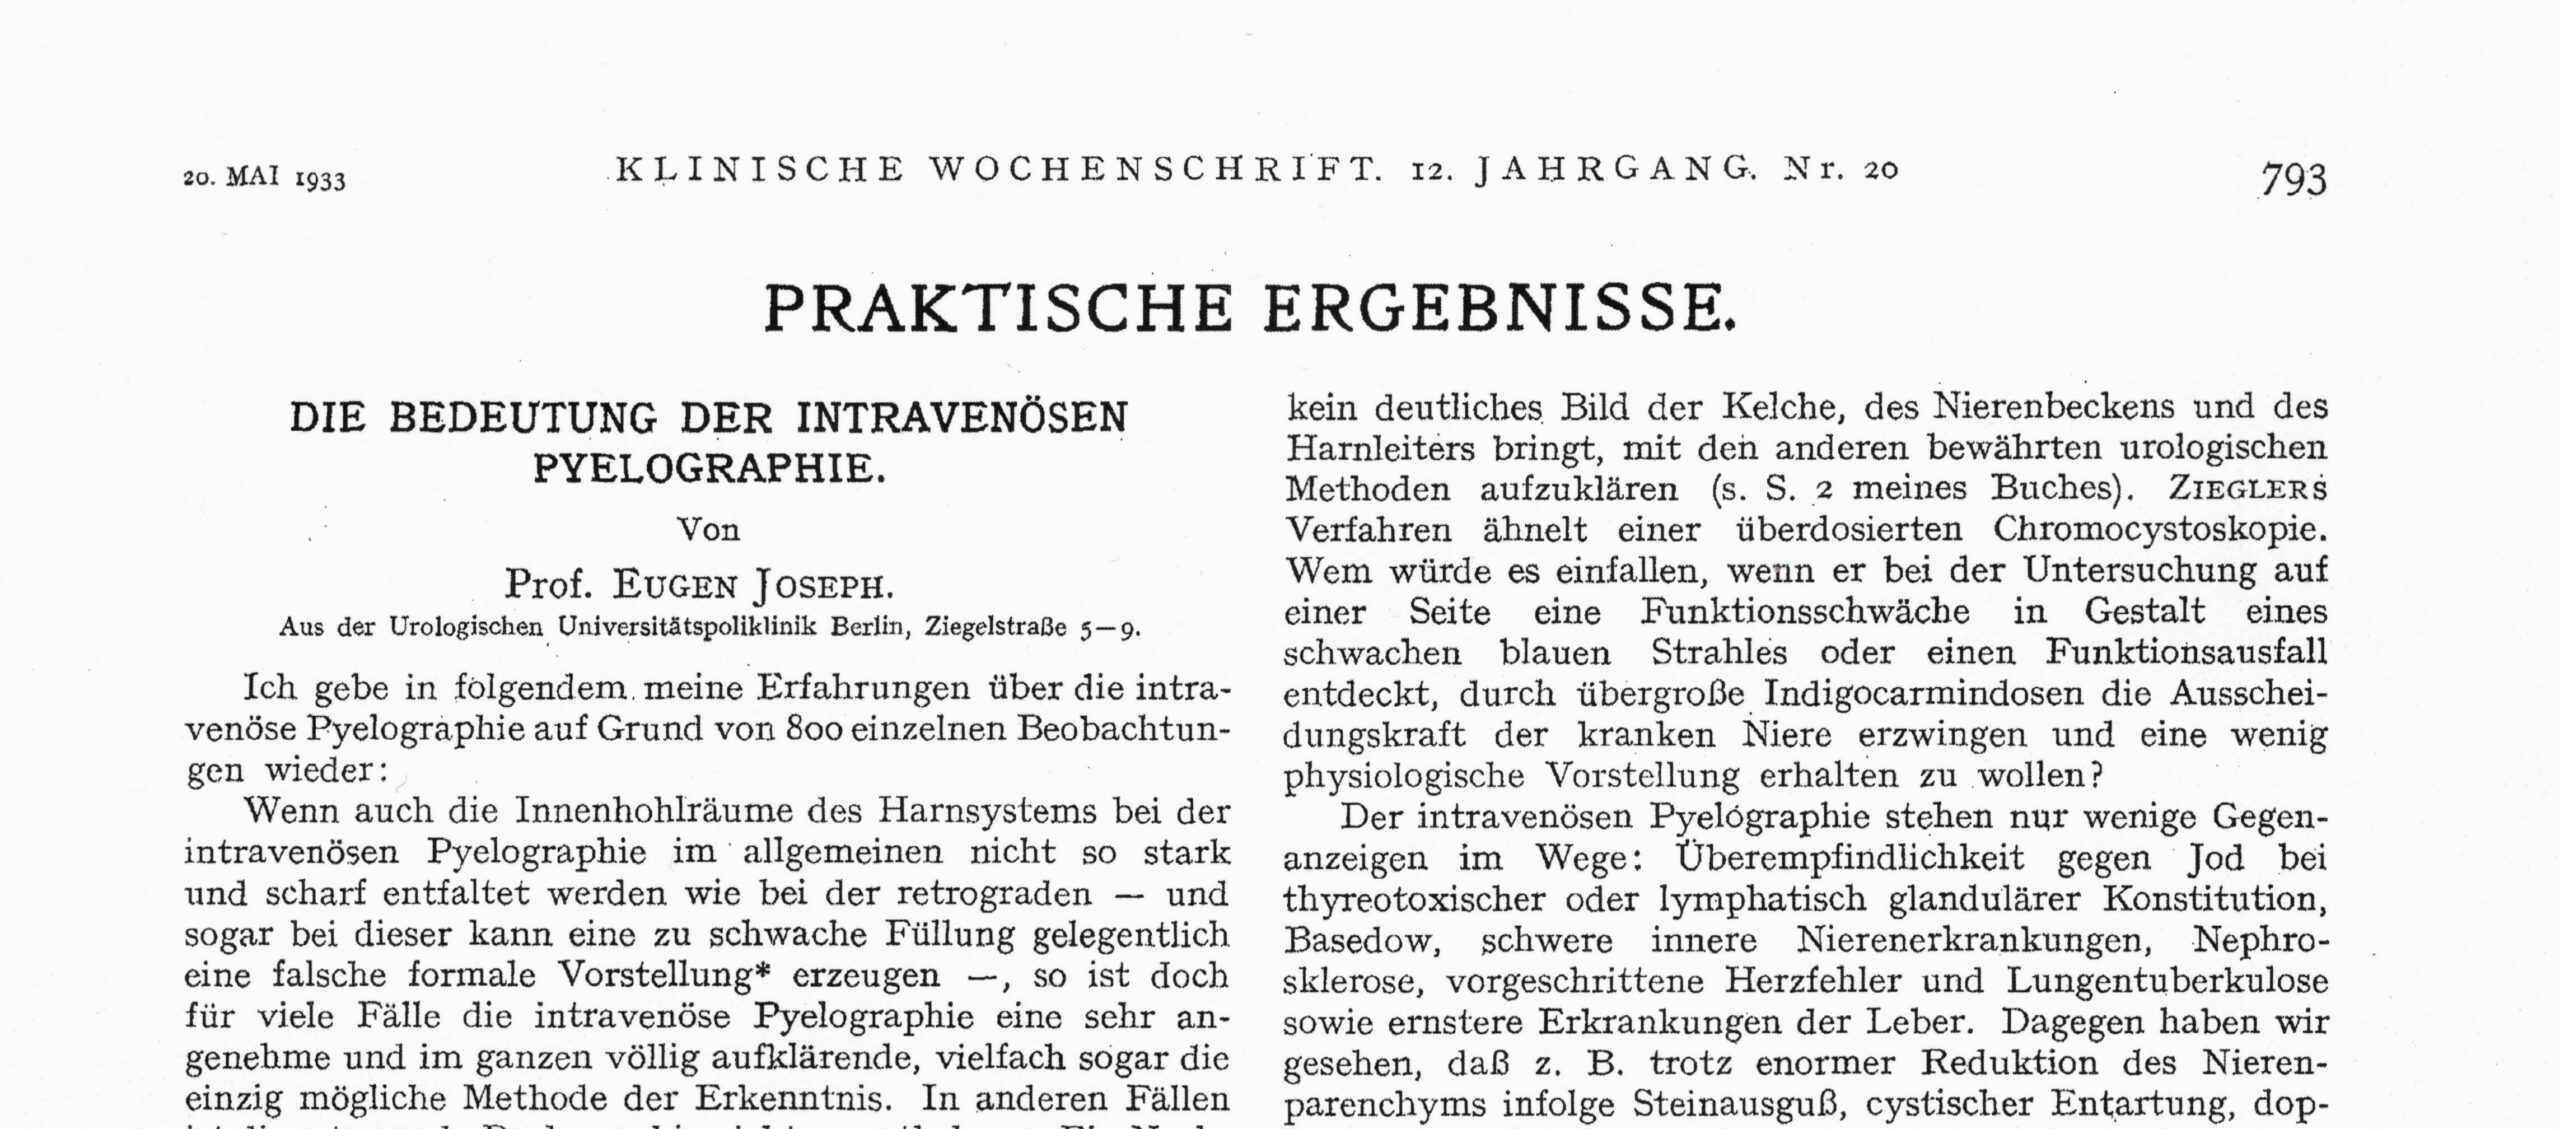 Klinische Wochenschrift 1933